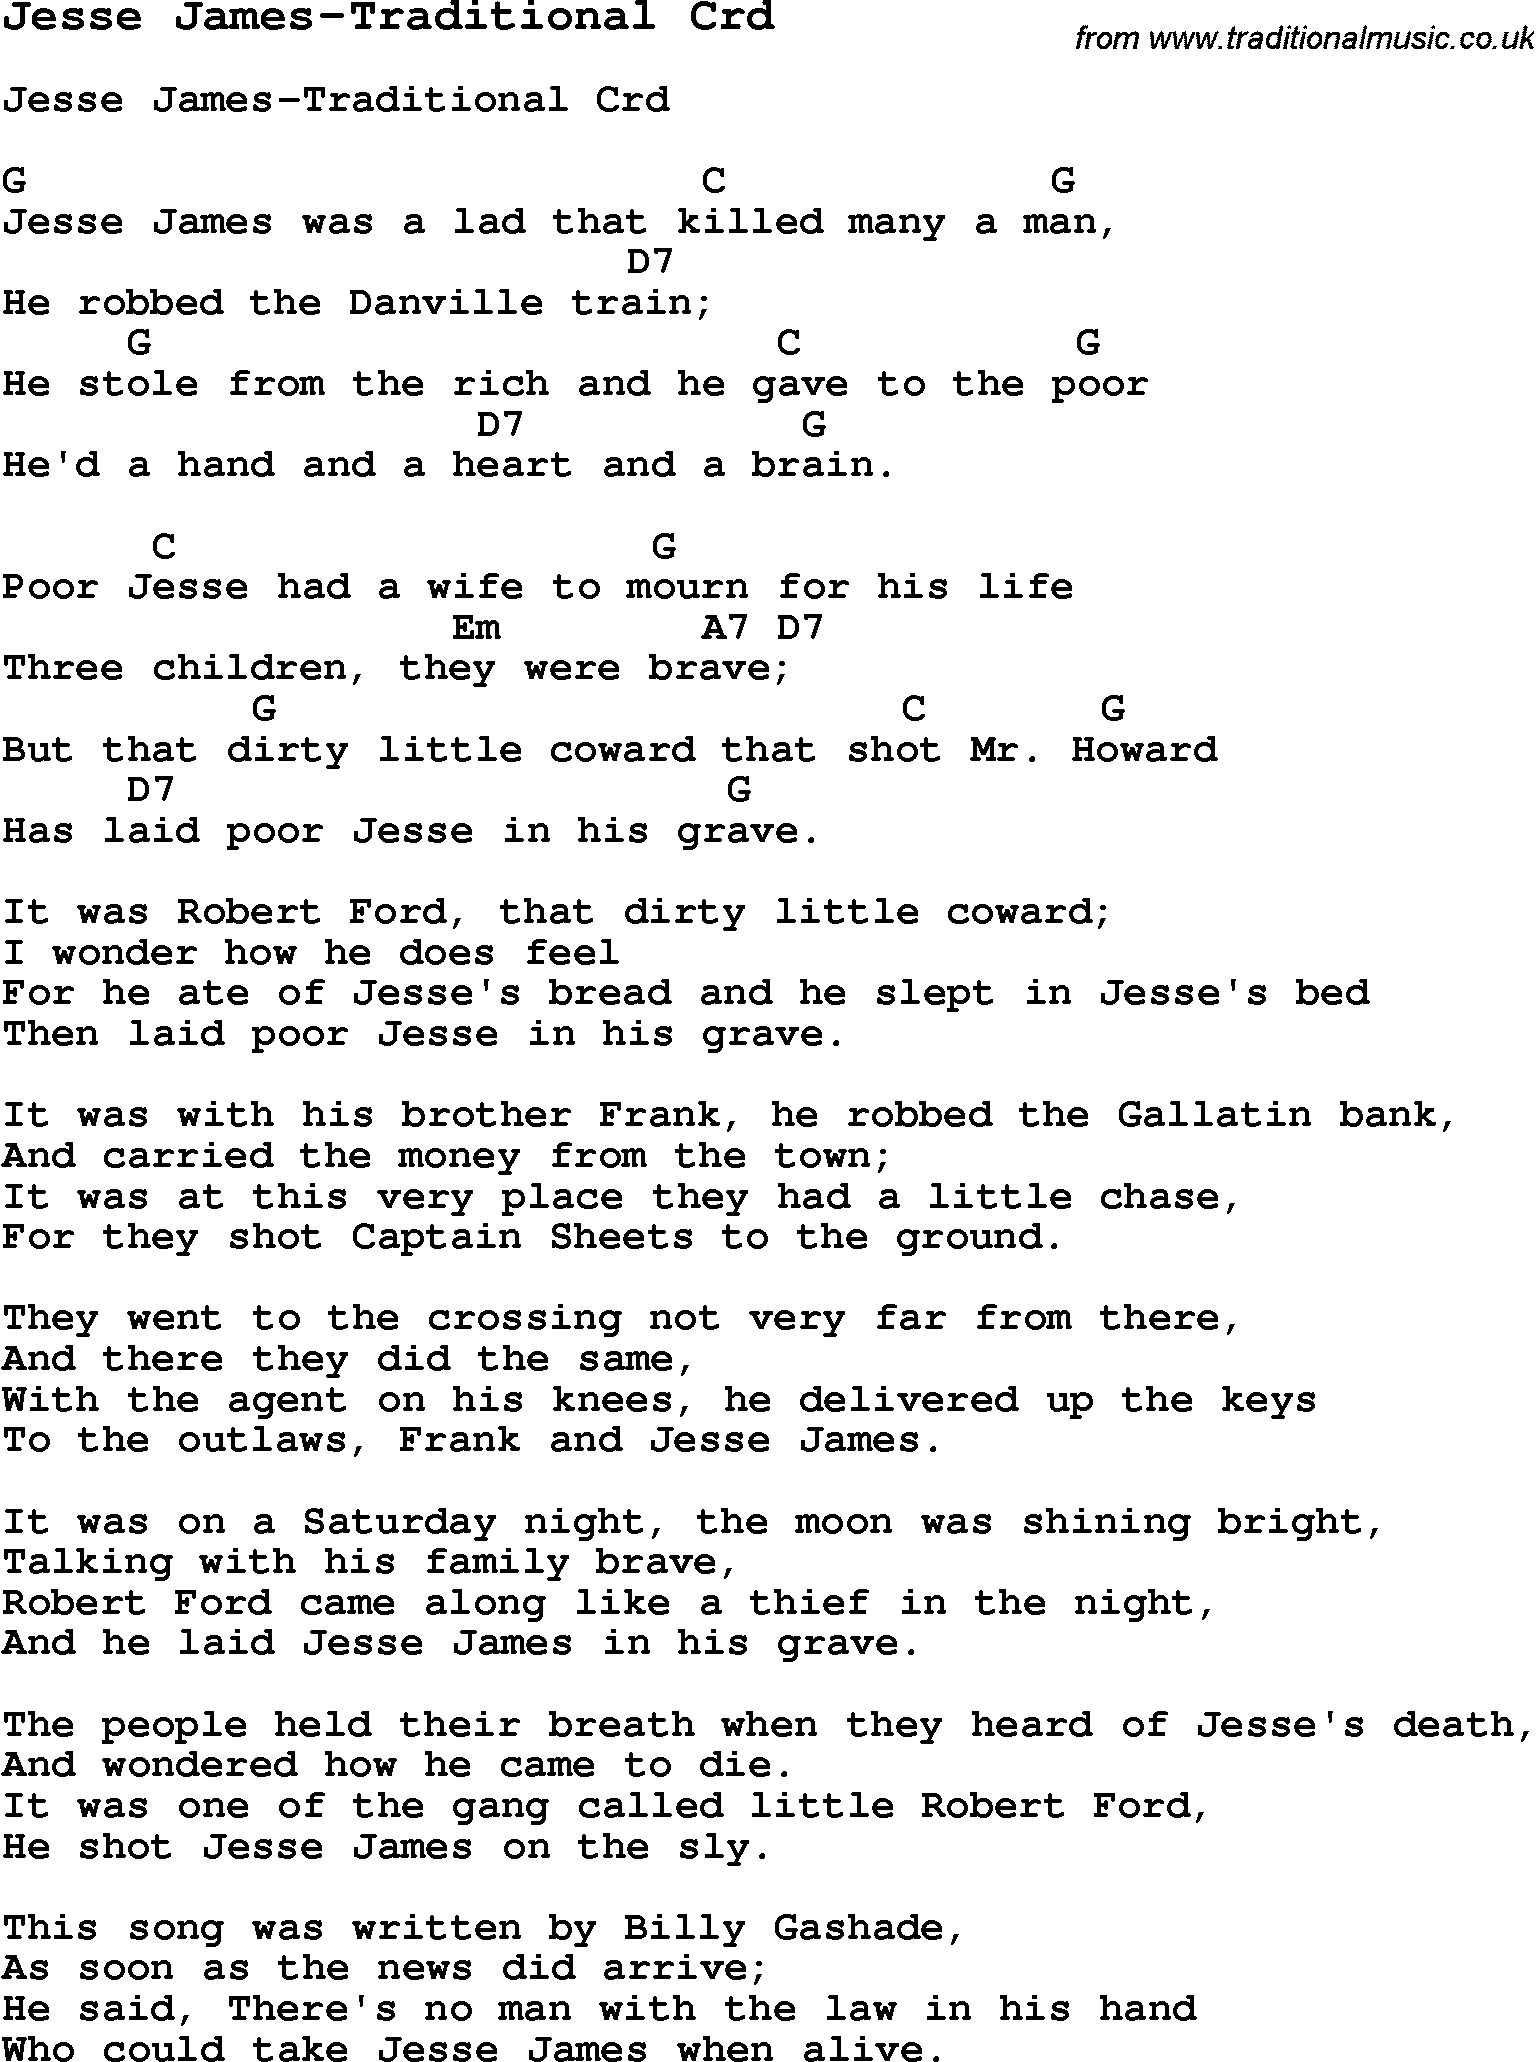 Skiffle Song Lyrics for Jesse James-Traditional with chords for Mandolin, Ukulele, Guitar, Banjo etc.